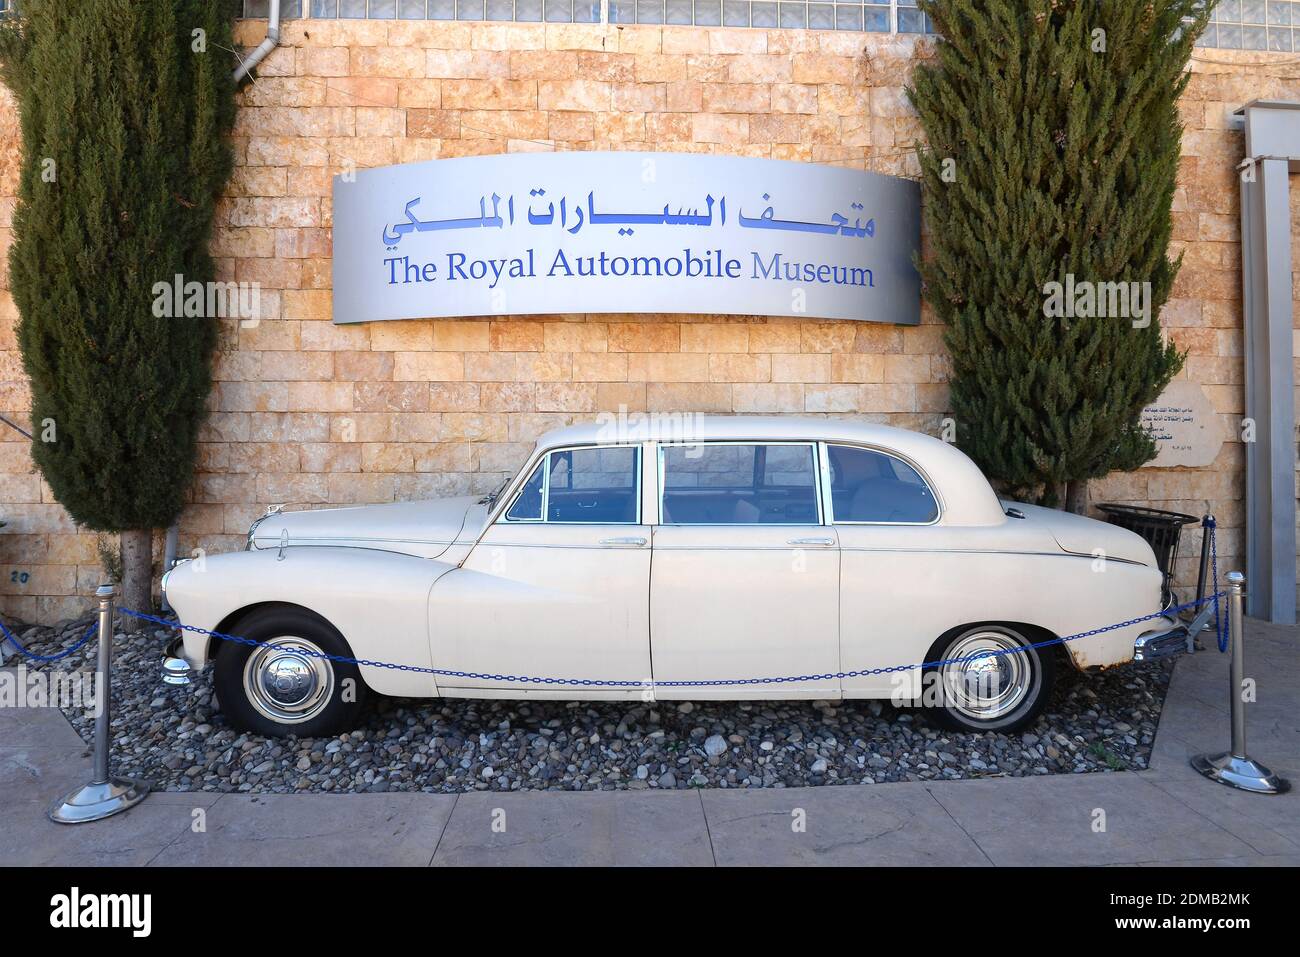 Entrée au Musée royal de l'automobile à Amman, Jordanie. Panneau de voiture et de musée. Banque D'Images